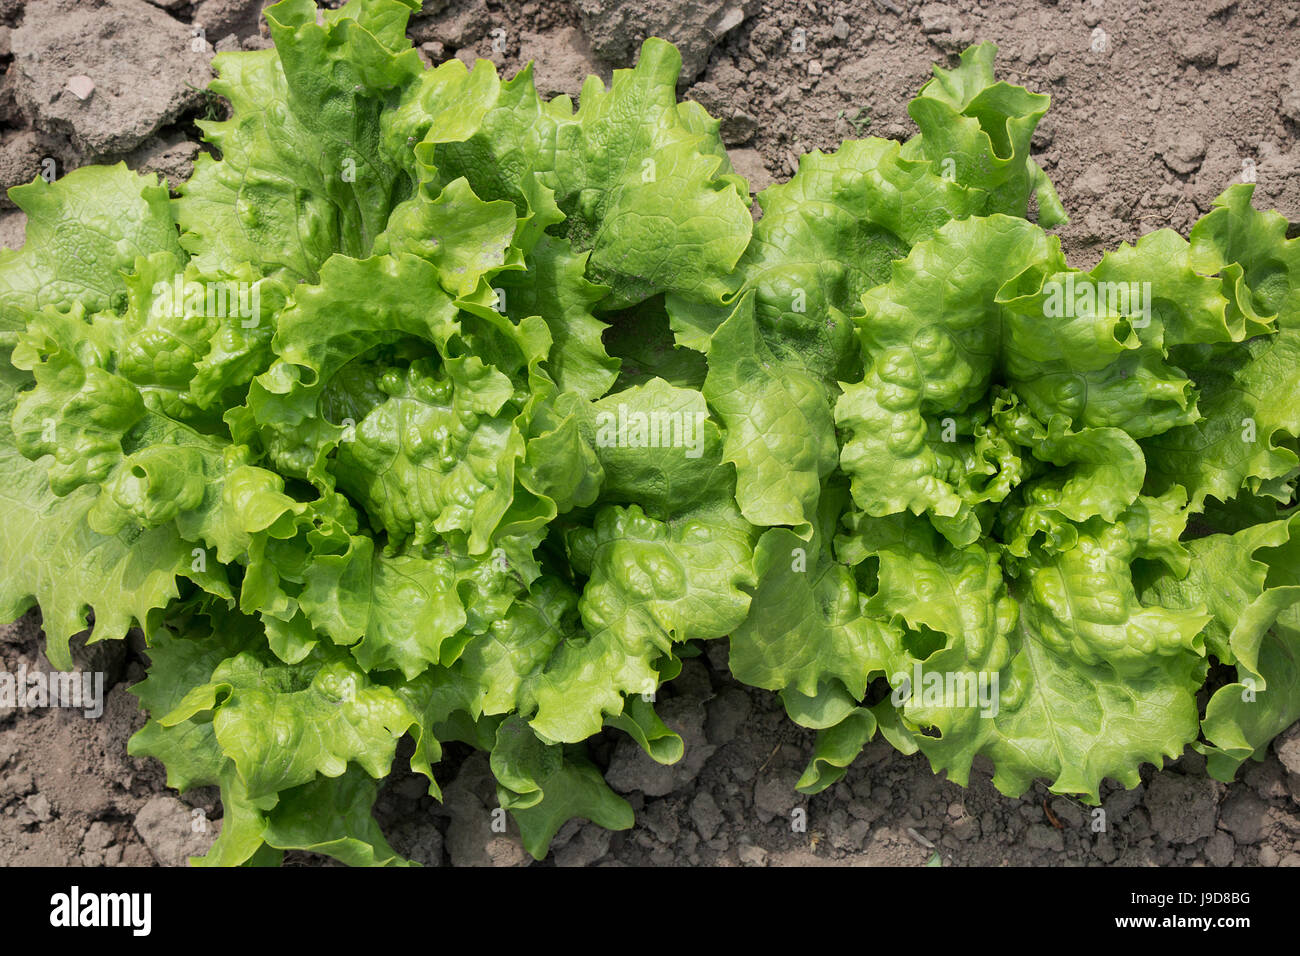 Frische Bio Römersalat, Cos Salat, wachsen im Boden vor der Ernte Stockfoto